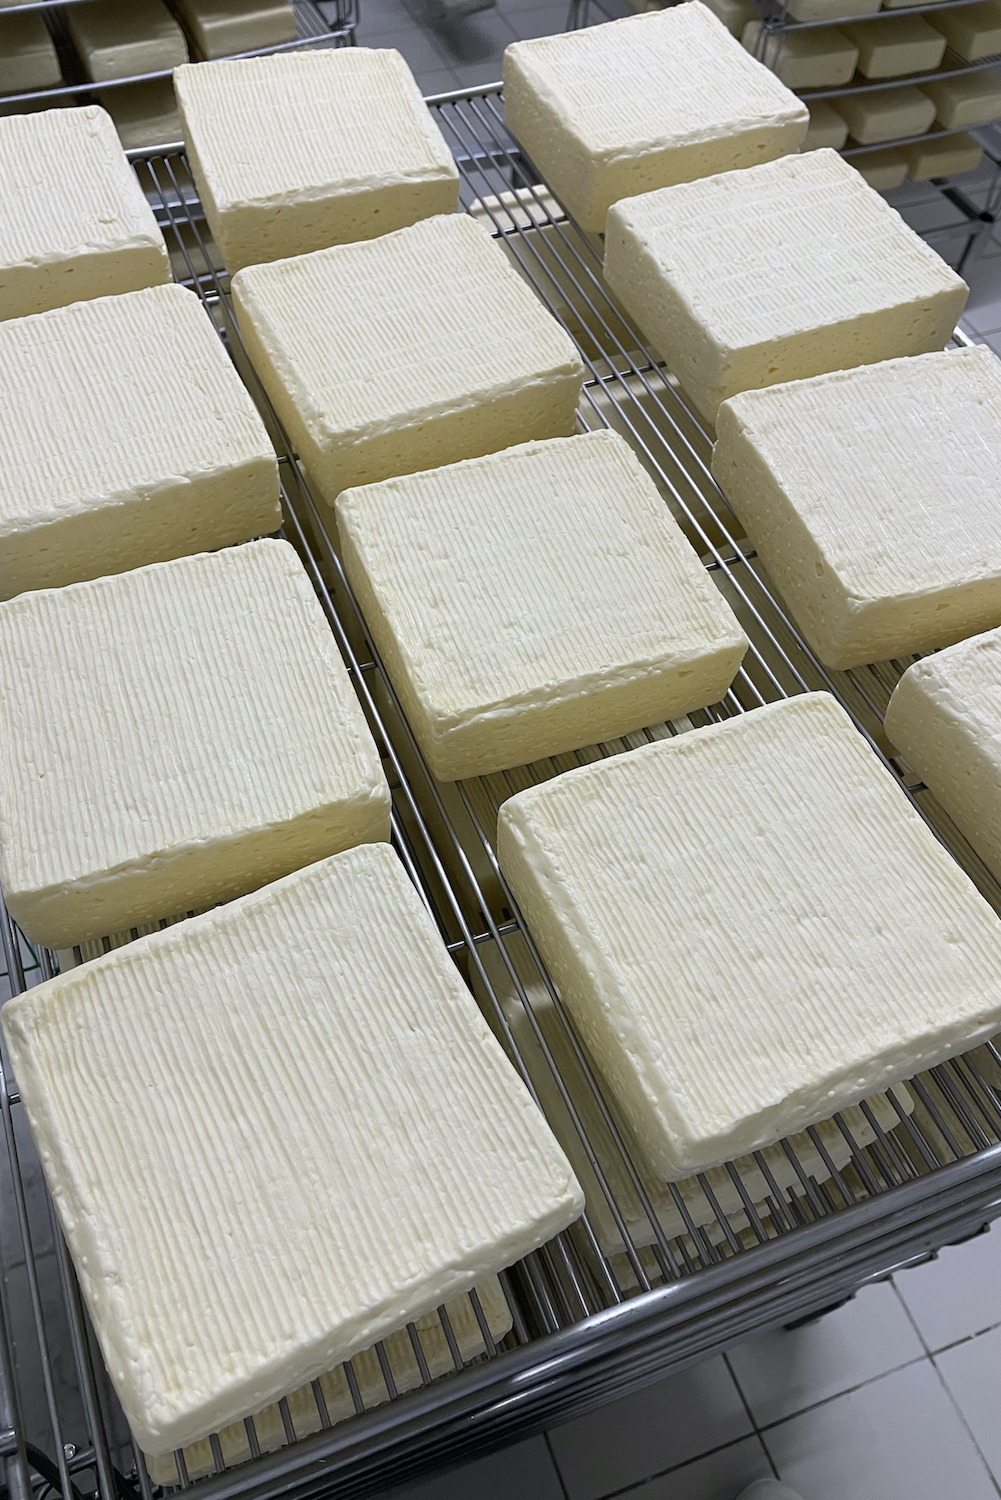 Les fromages sont ensuite placés dans un séchoir ventilé. © Globe Reporters